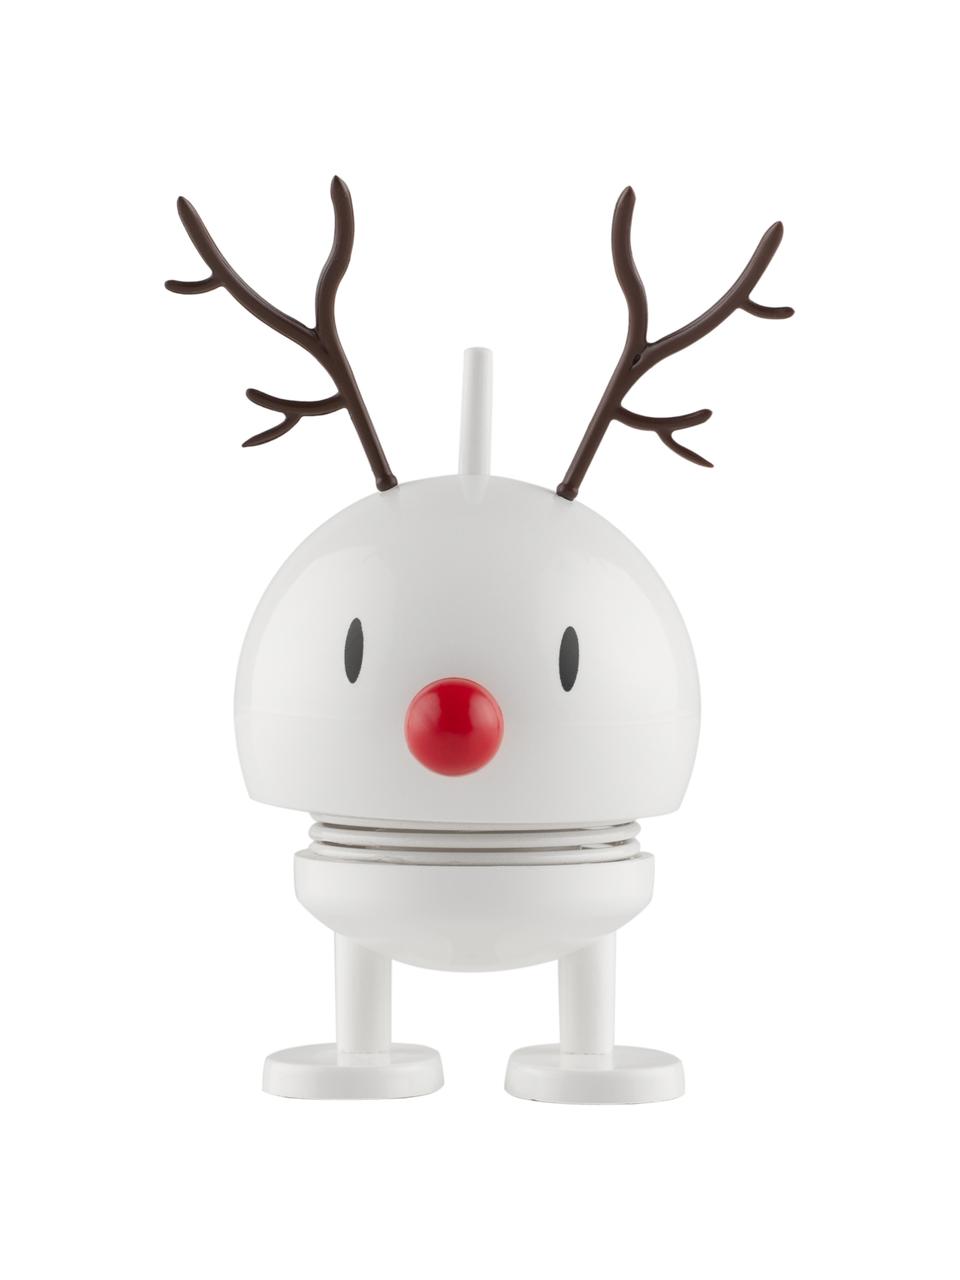 Decoratief object Reindeer Bumble, Kunststof, metaal, Wit, zwart, rood, Ø 5 x H 9 cm